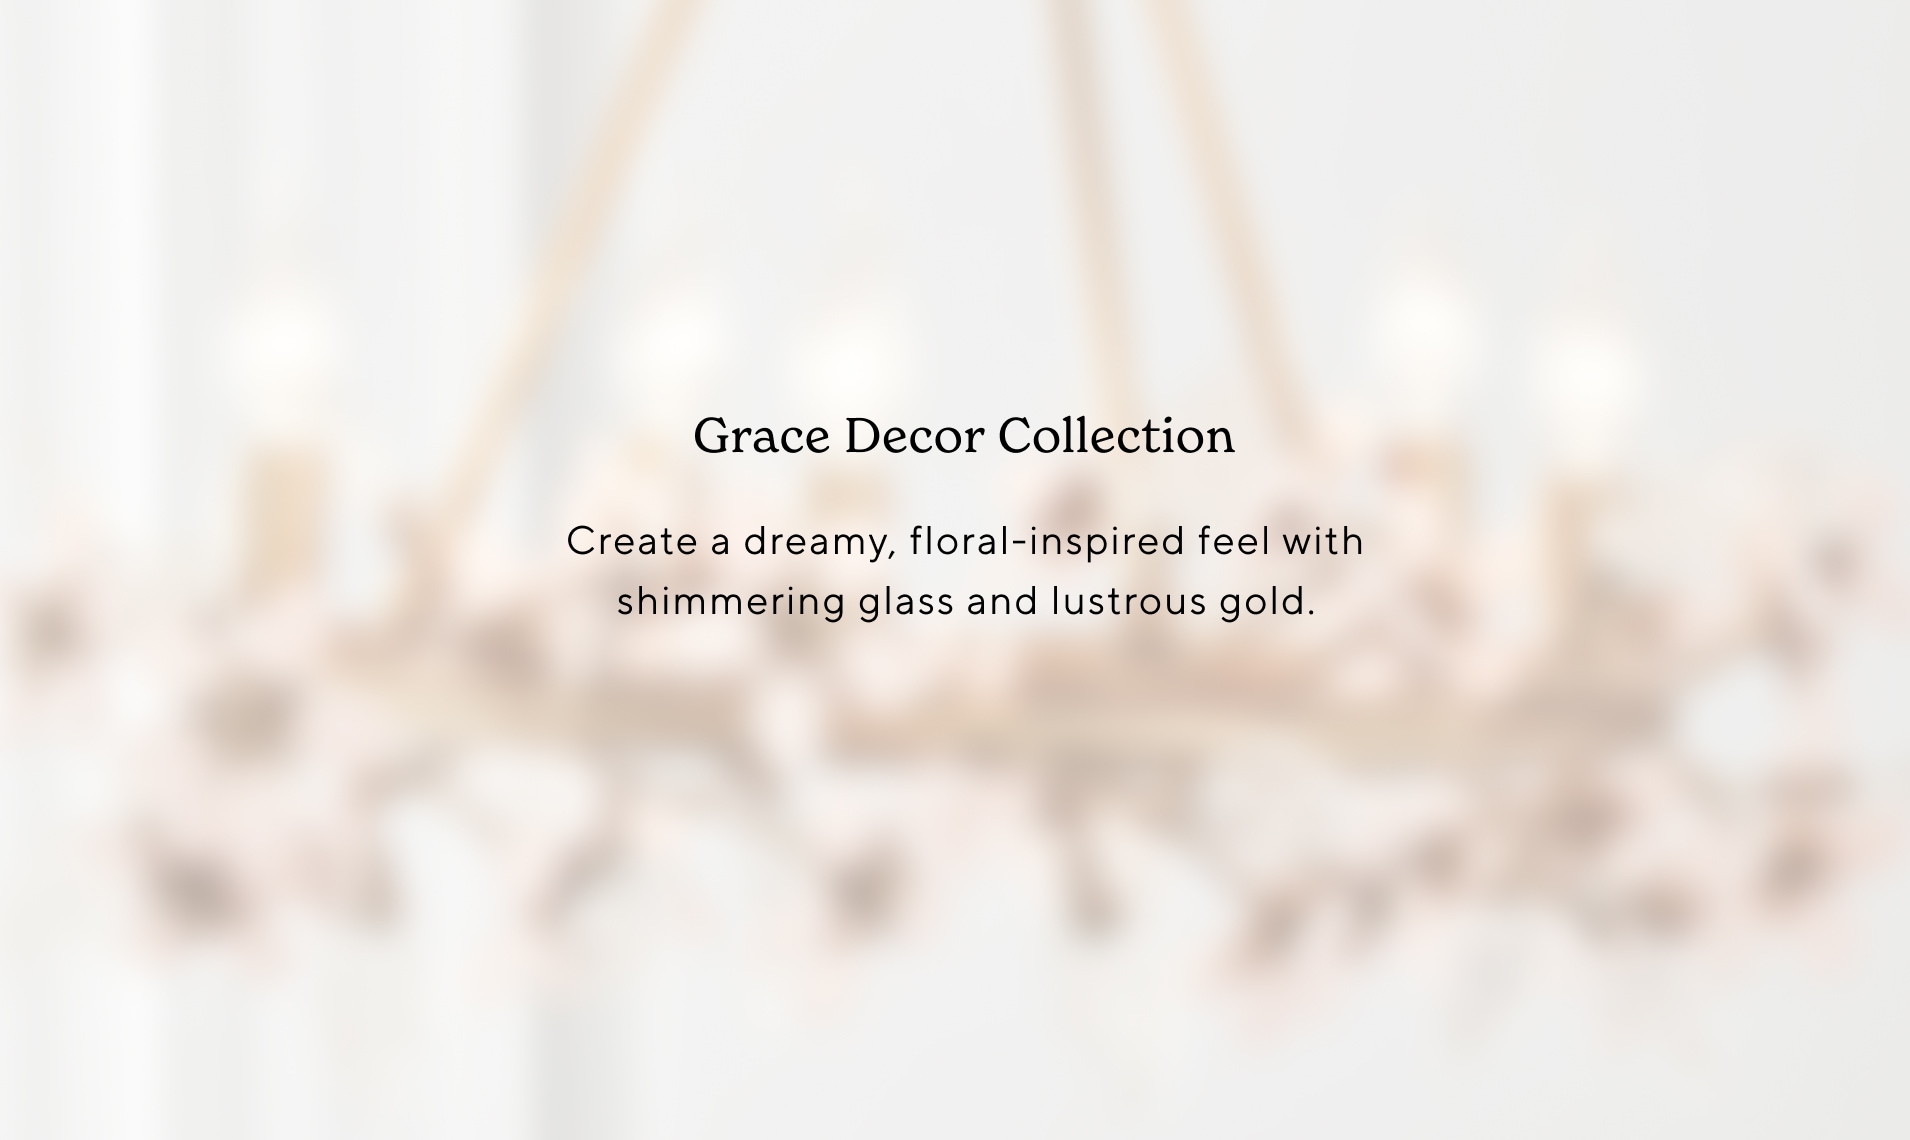 Grace Decor Collection